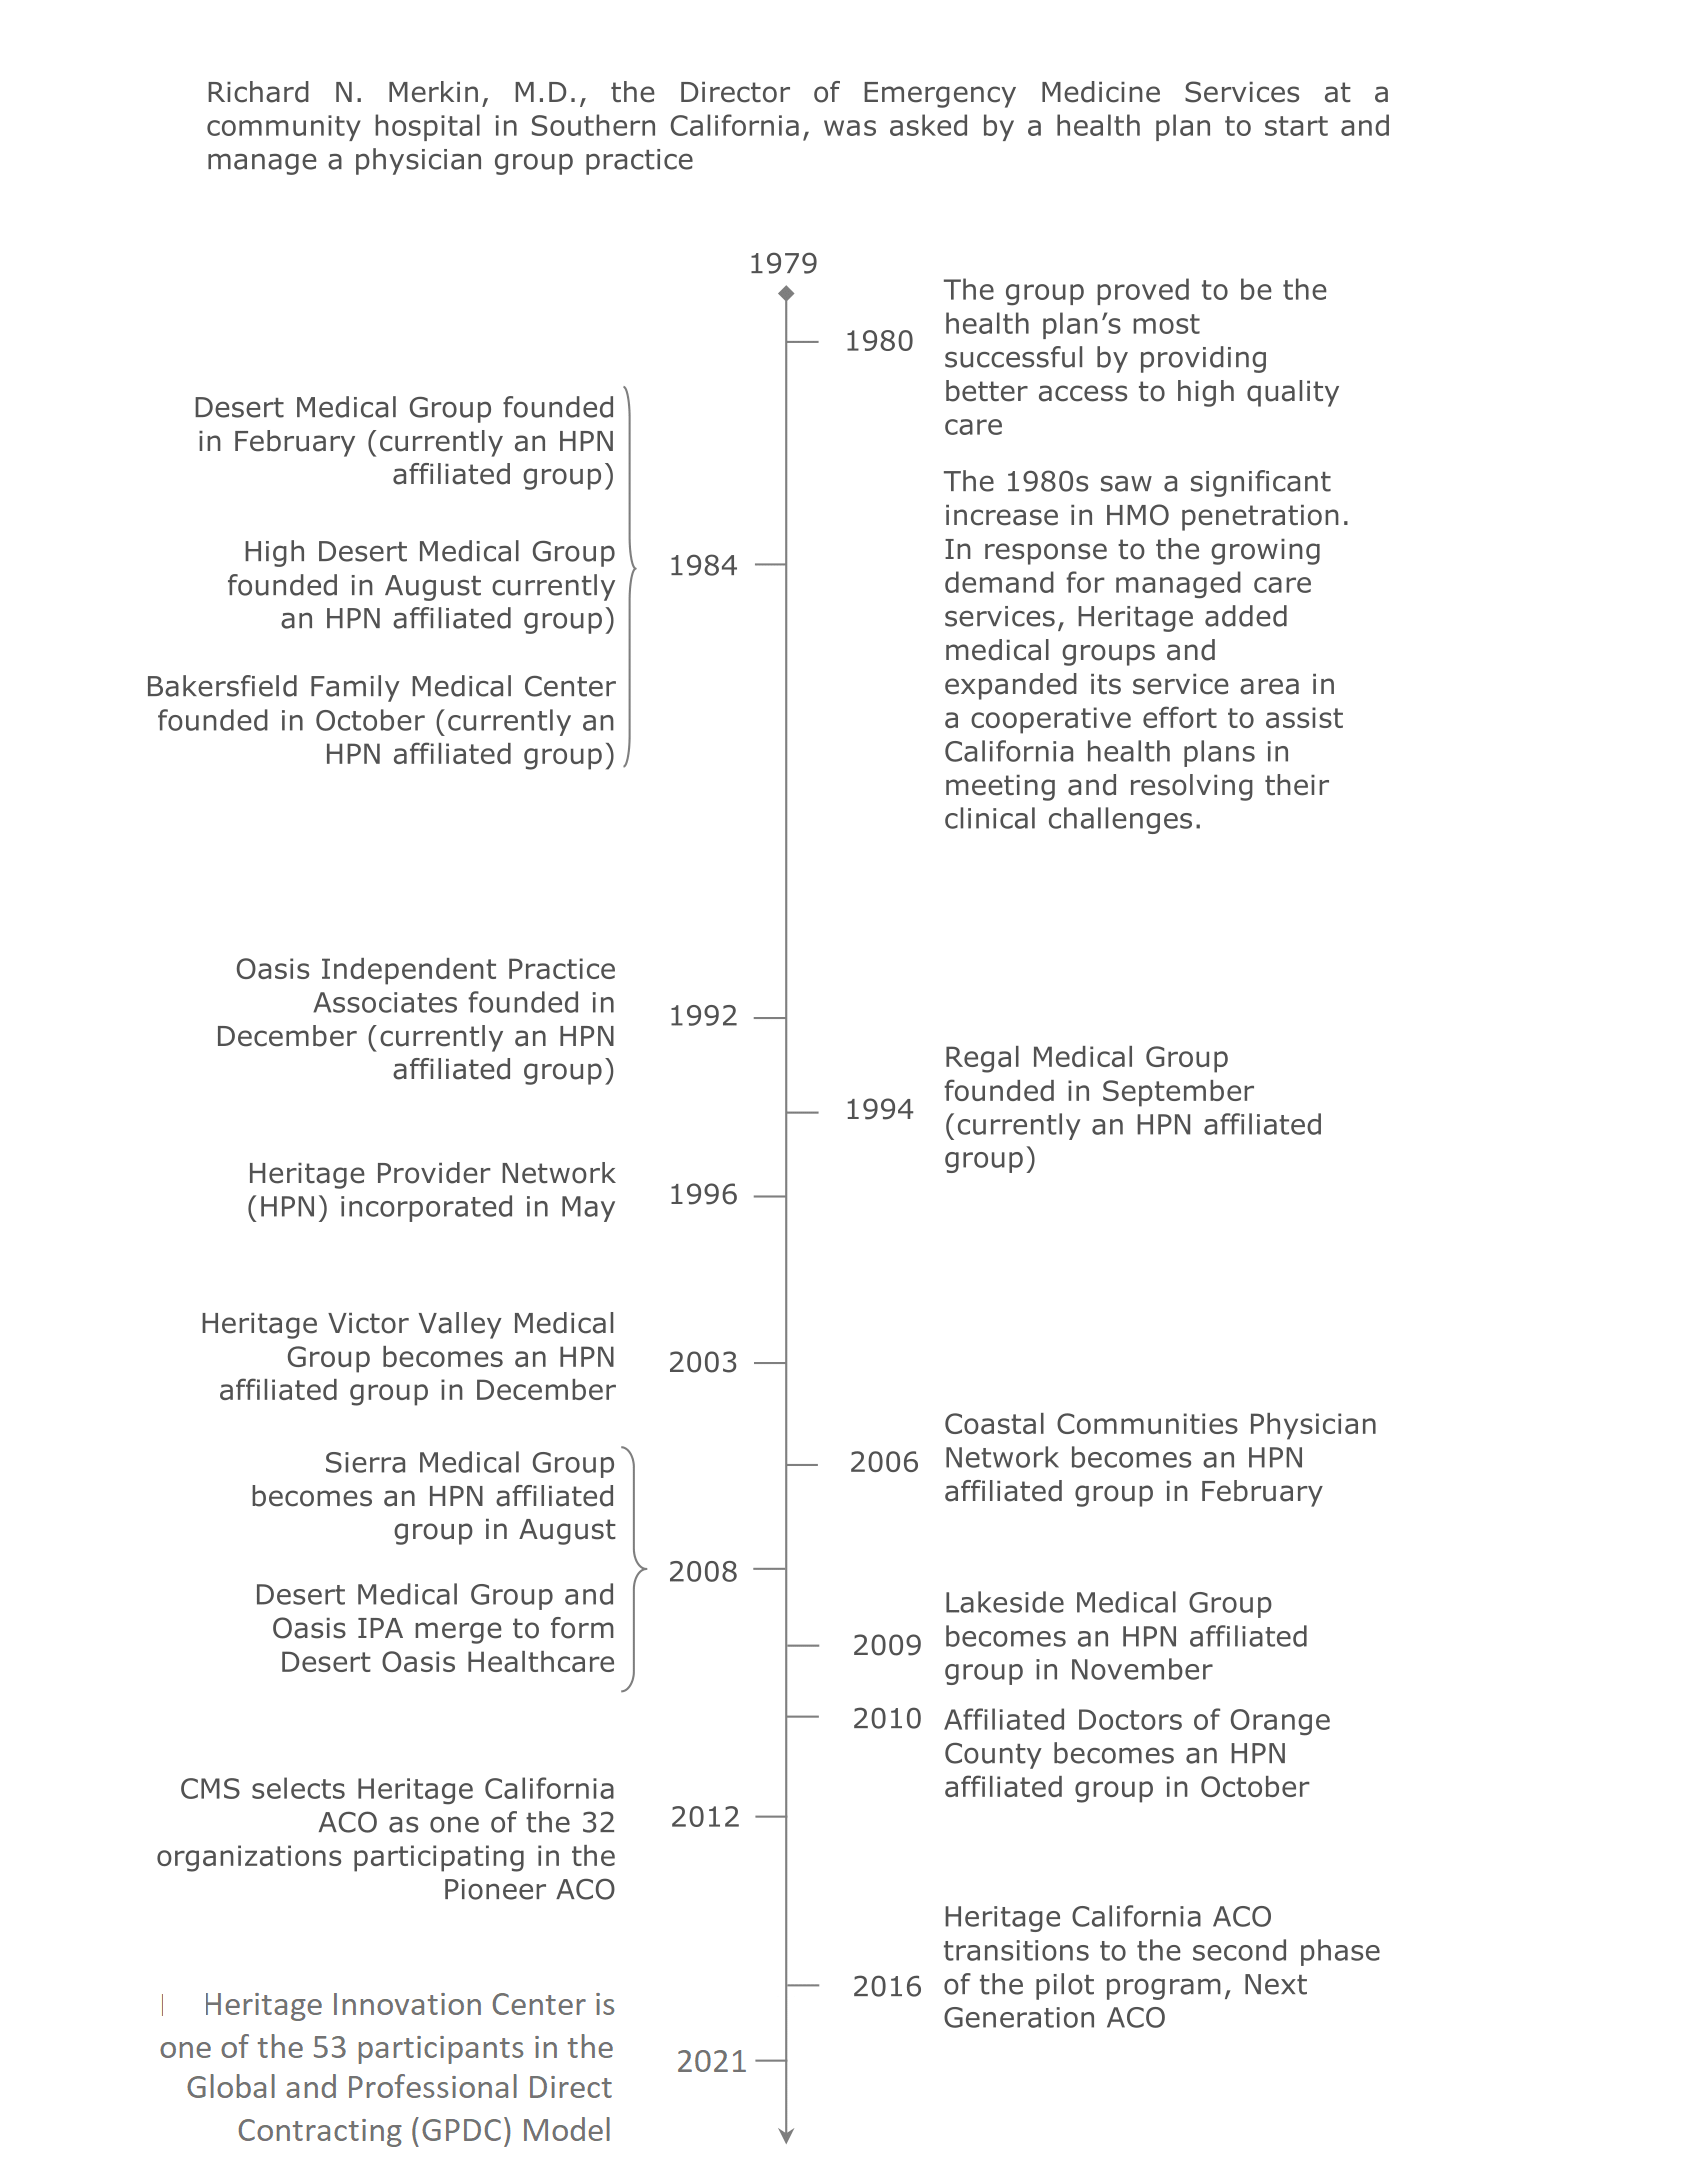 Historical Timeline of HPN